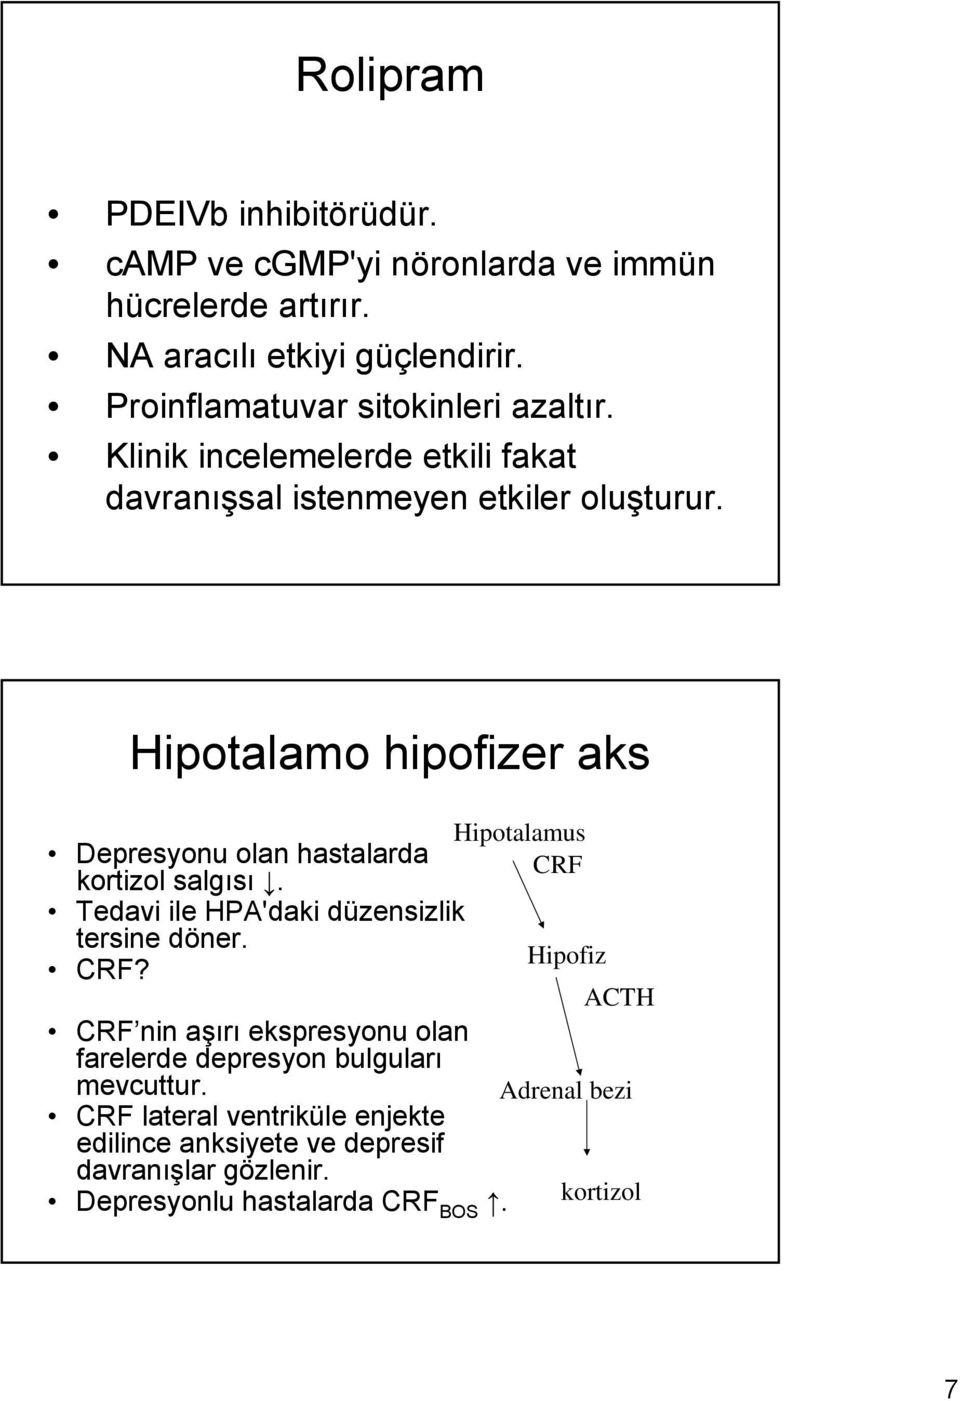 Hipotalamo hipofizer aks Hipotalamus Depresyonu olan hastalarda CRF kortizol salgısı. Tedavi ile HPA'daki düzensizlik tersine döner. Hipofiz CRF?